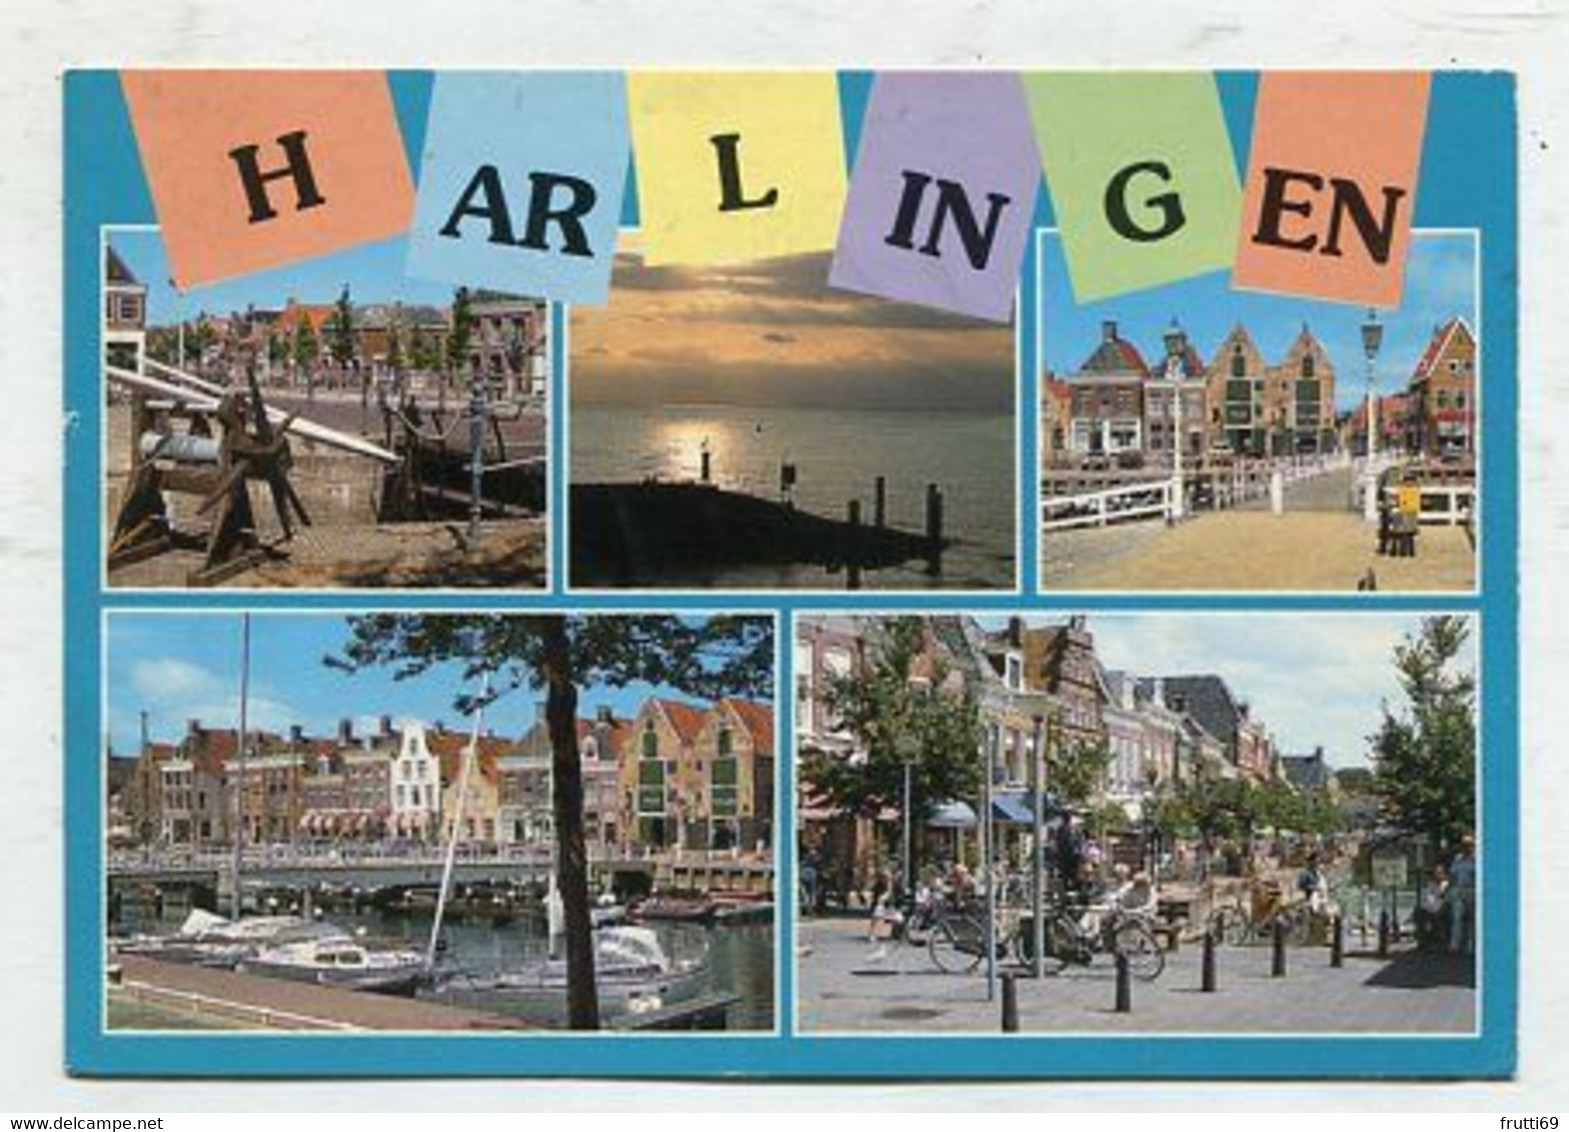 AK 086204 NETHERLANDS - Harlingen - Harlingen